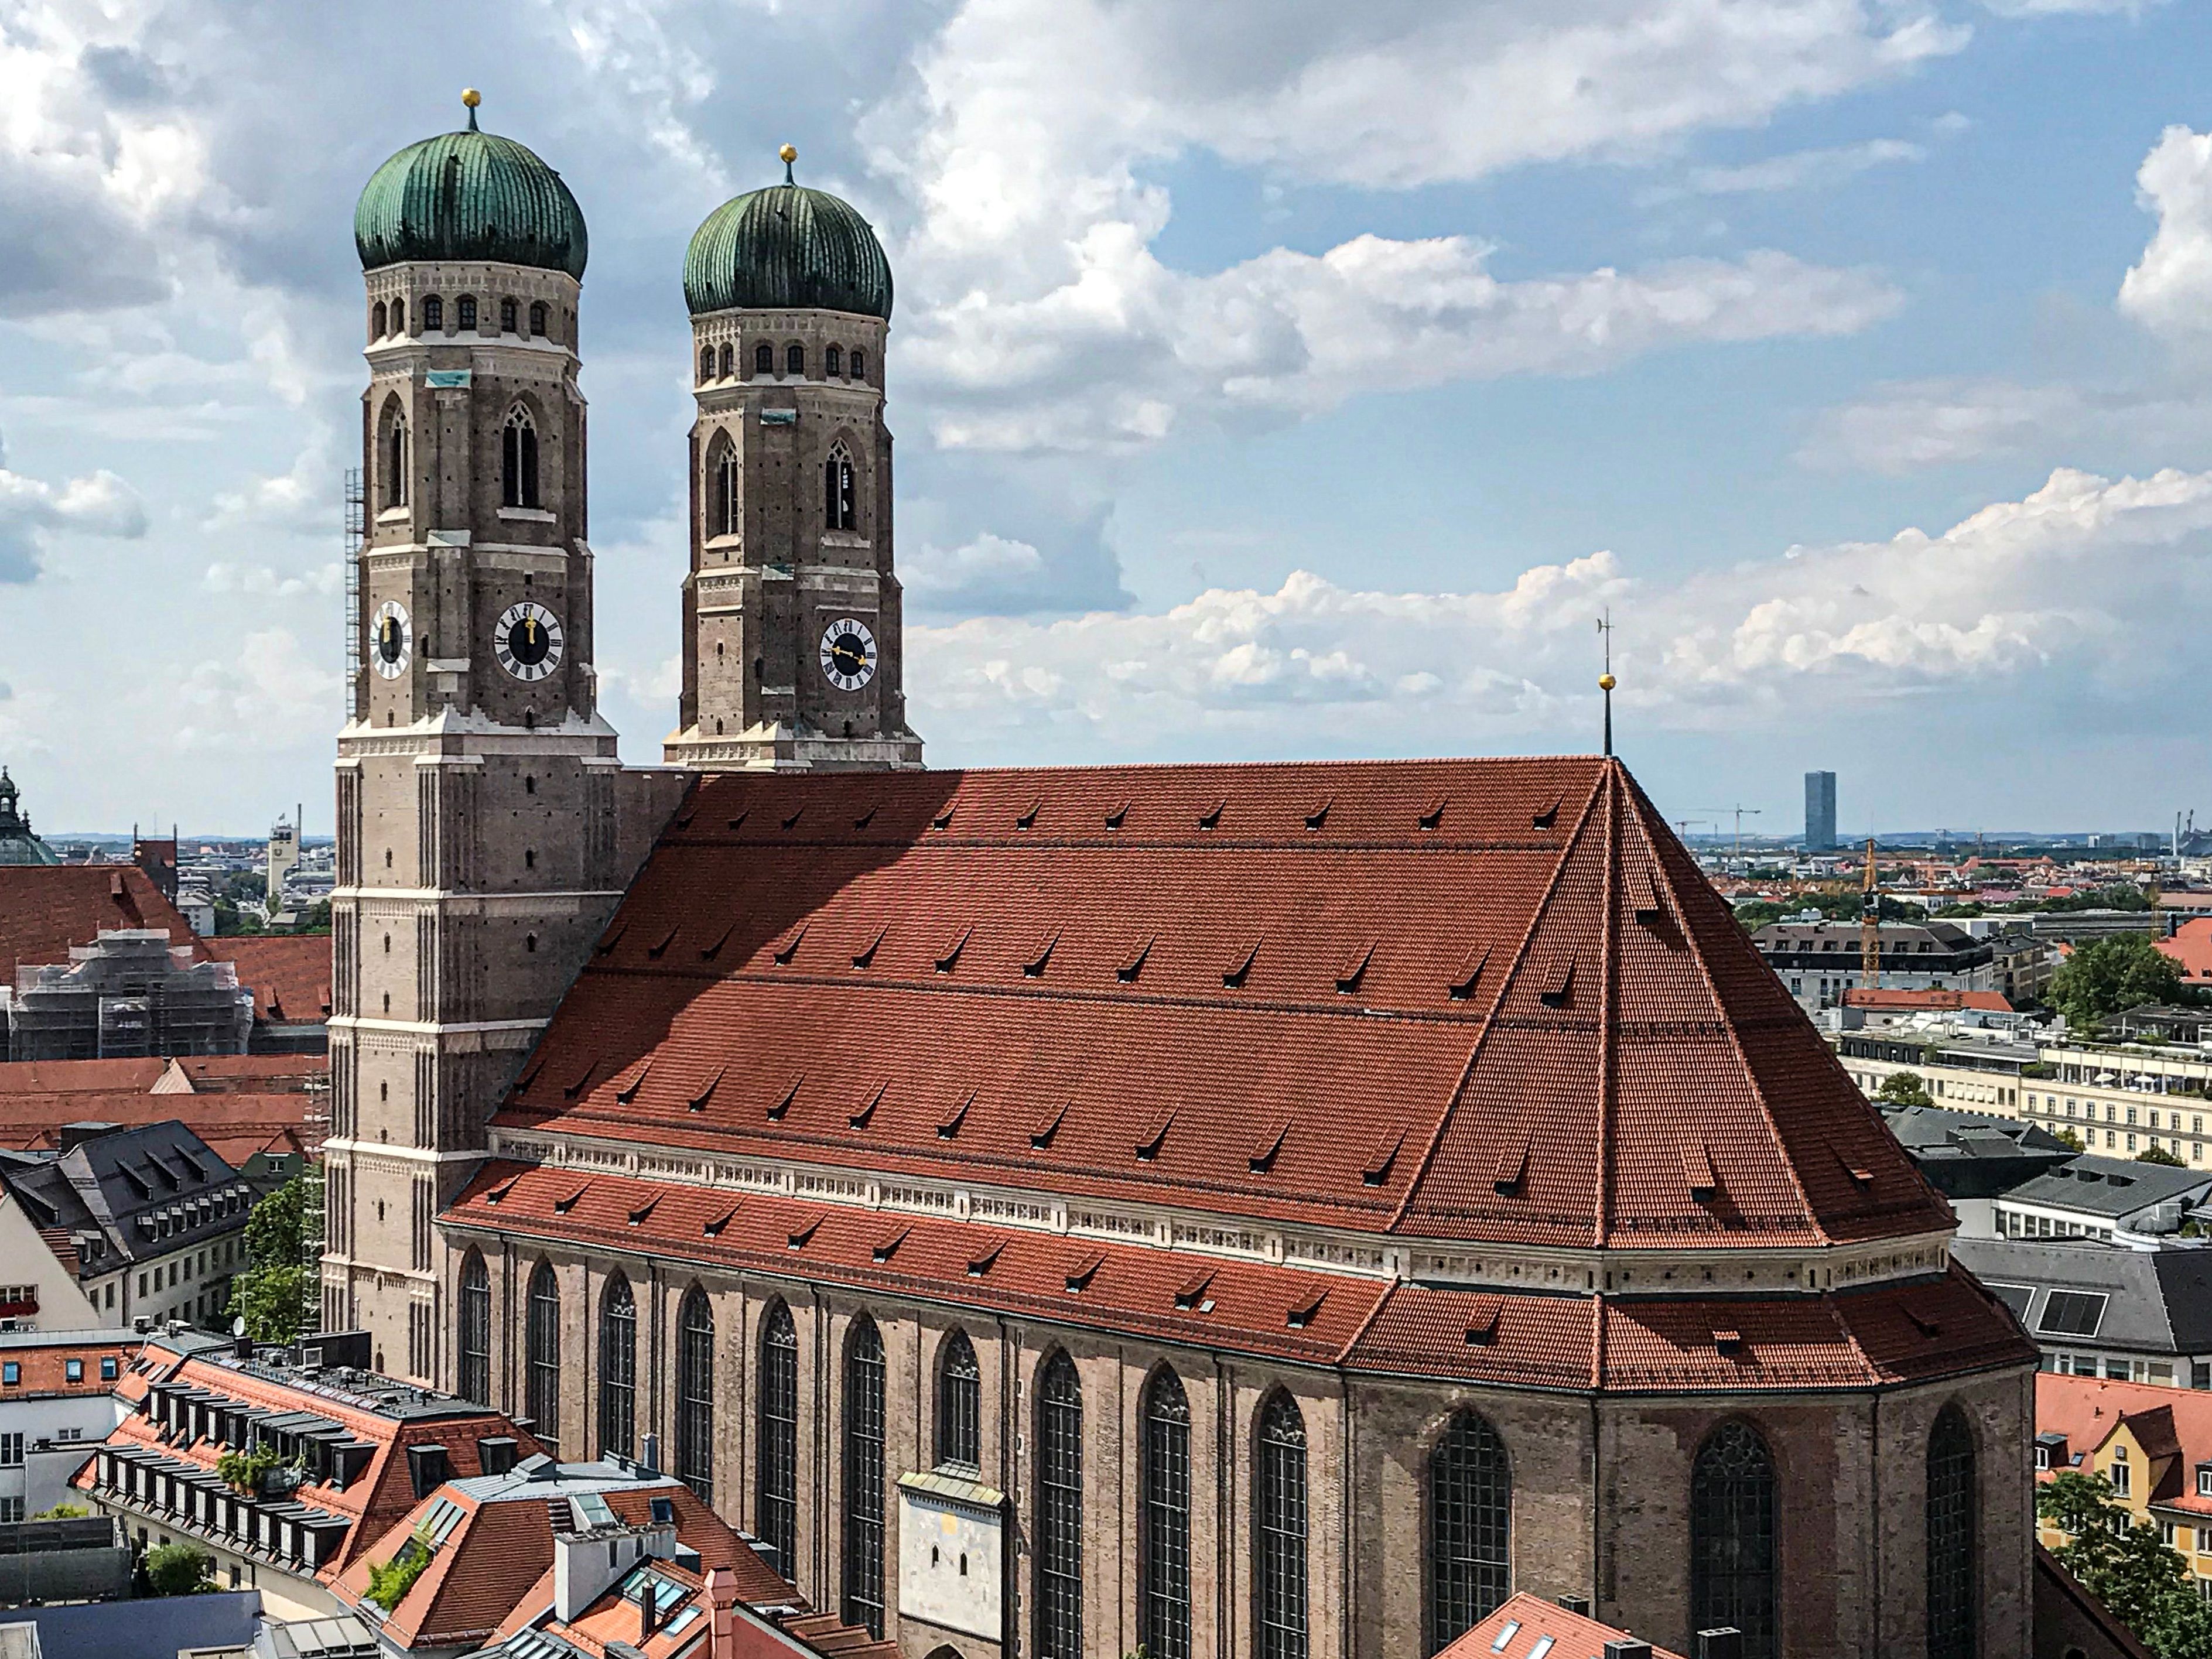 Blick auf den Dom zu Unserer Lieben Frau „Frauenkirche“ in München mit seinen zwei markanten Türmen